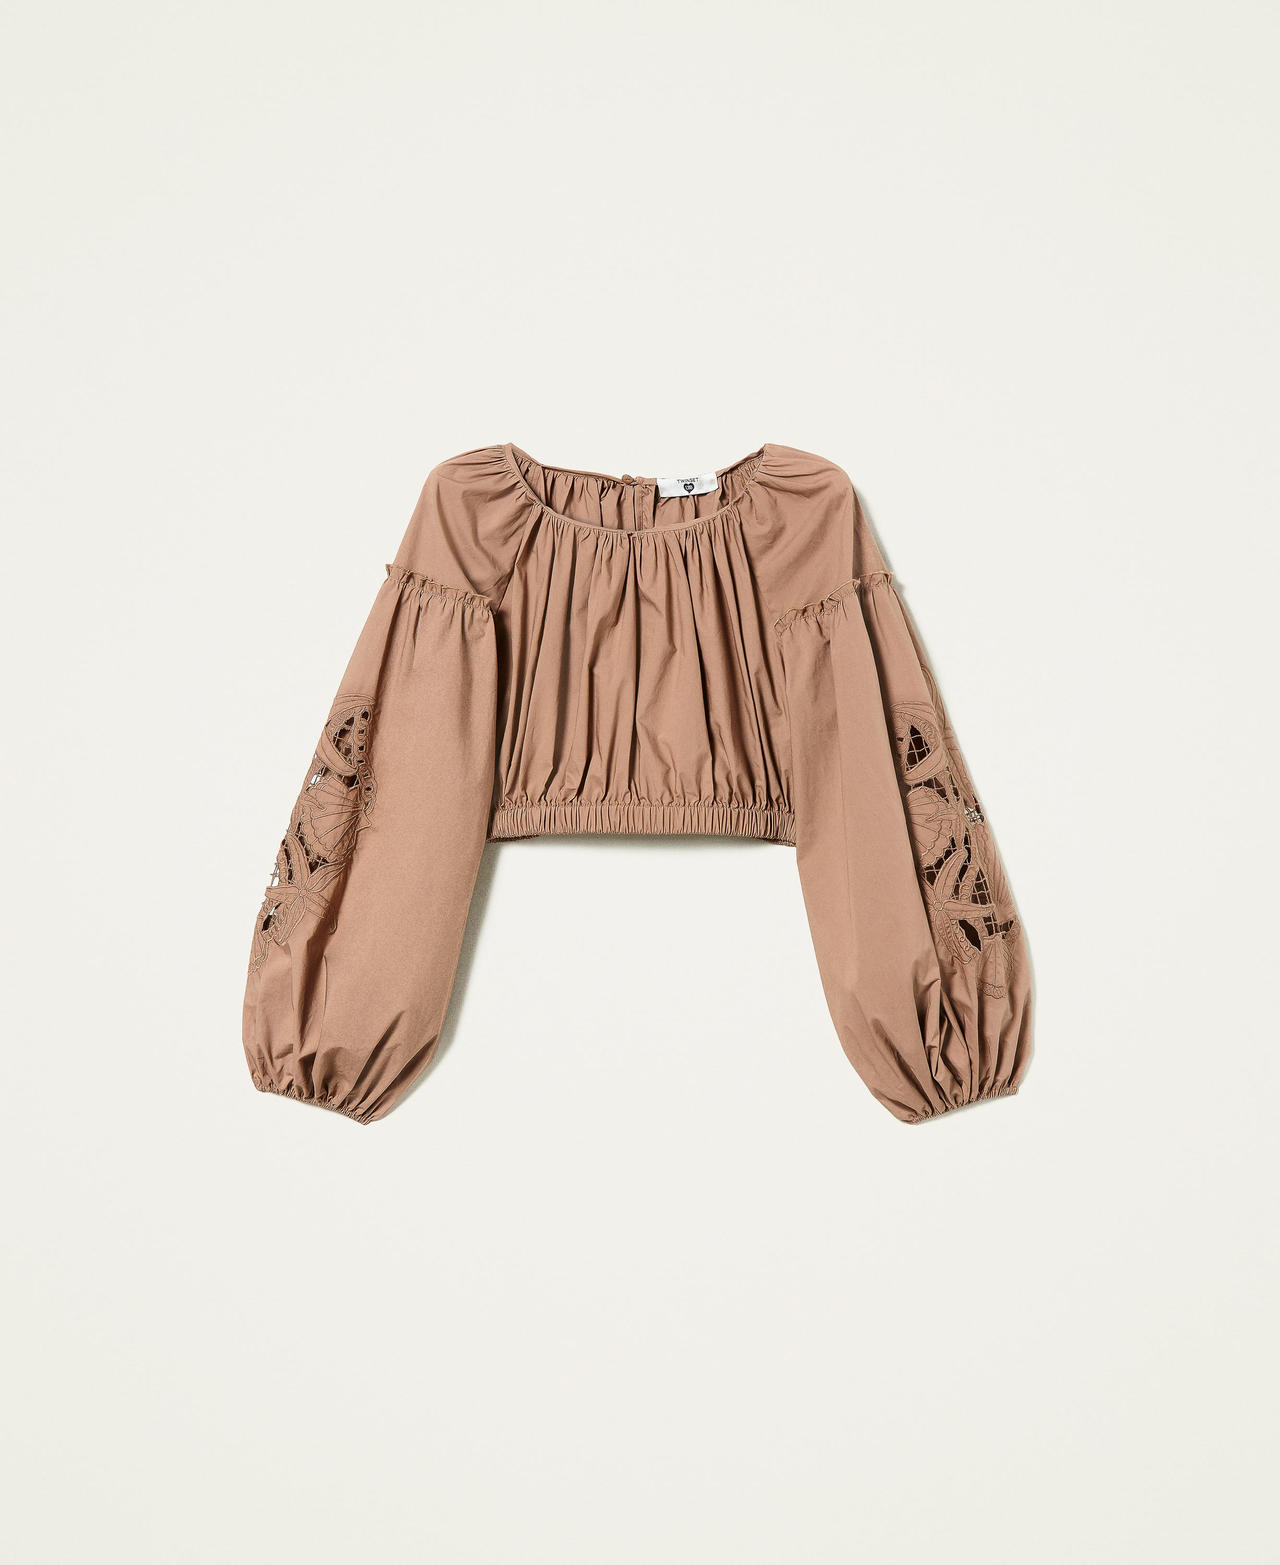 Укороченная блузка из поплина с вышивкой Коричневый "Коричневый орех" женщина 221LB2JBB-0S